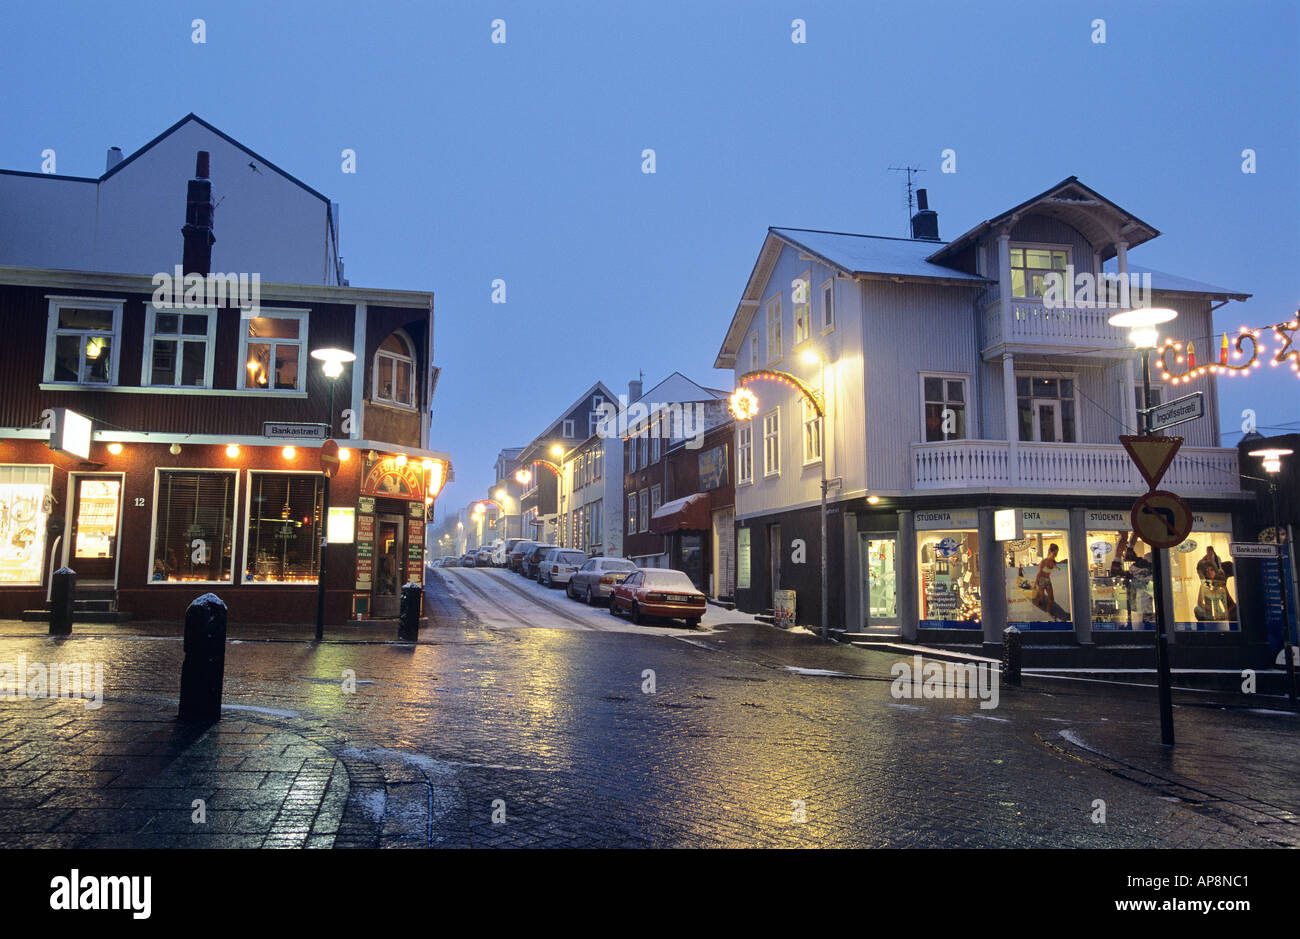 Photos: Winter style on Reykjavík's streets